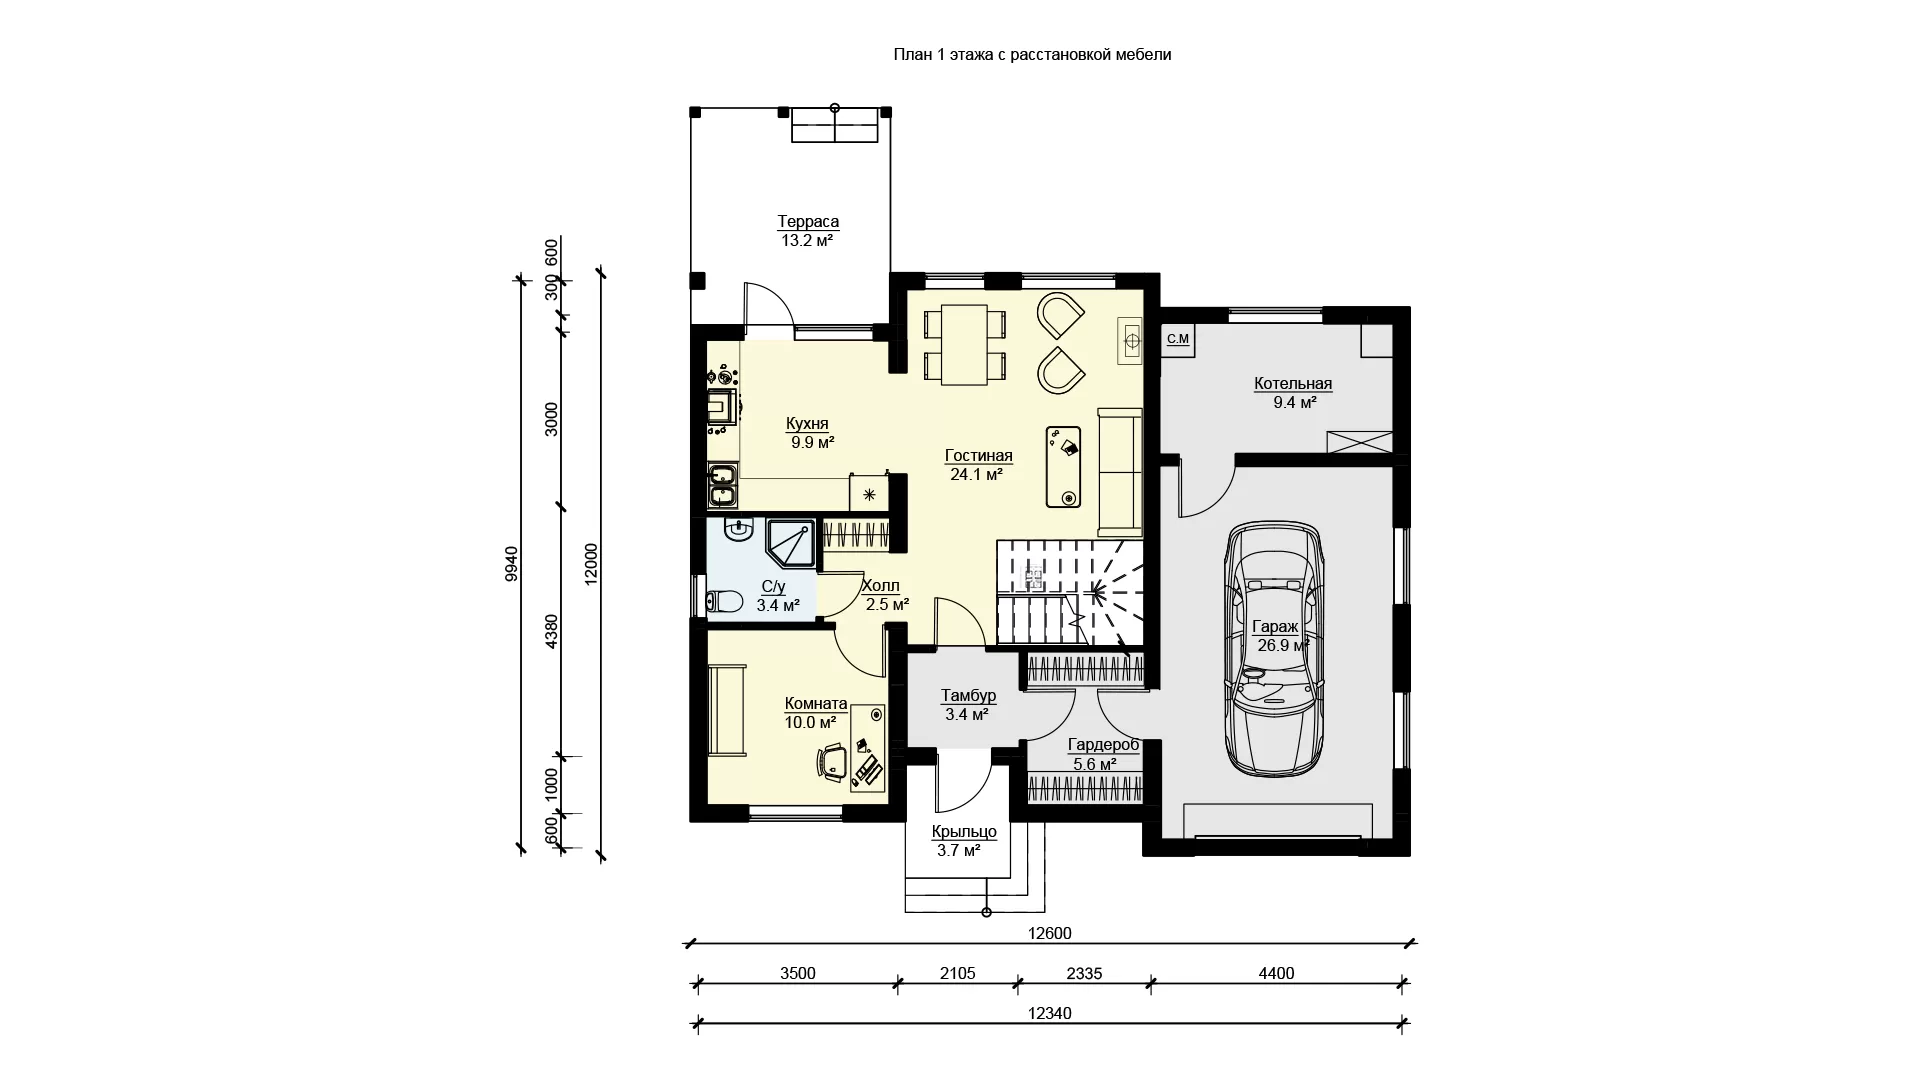 Дом с гаражом и террасой проект БП-216 из ЖБИ панелей  - планировка 1 этажа